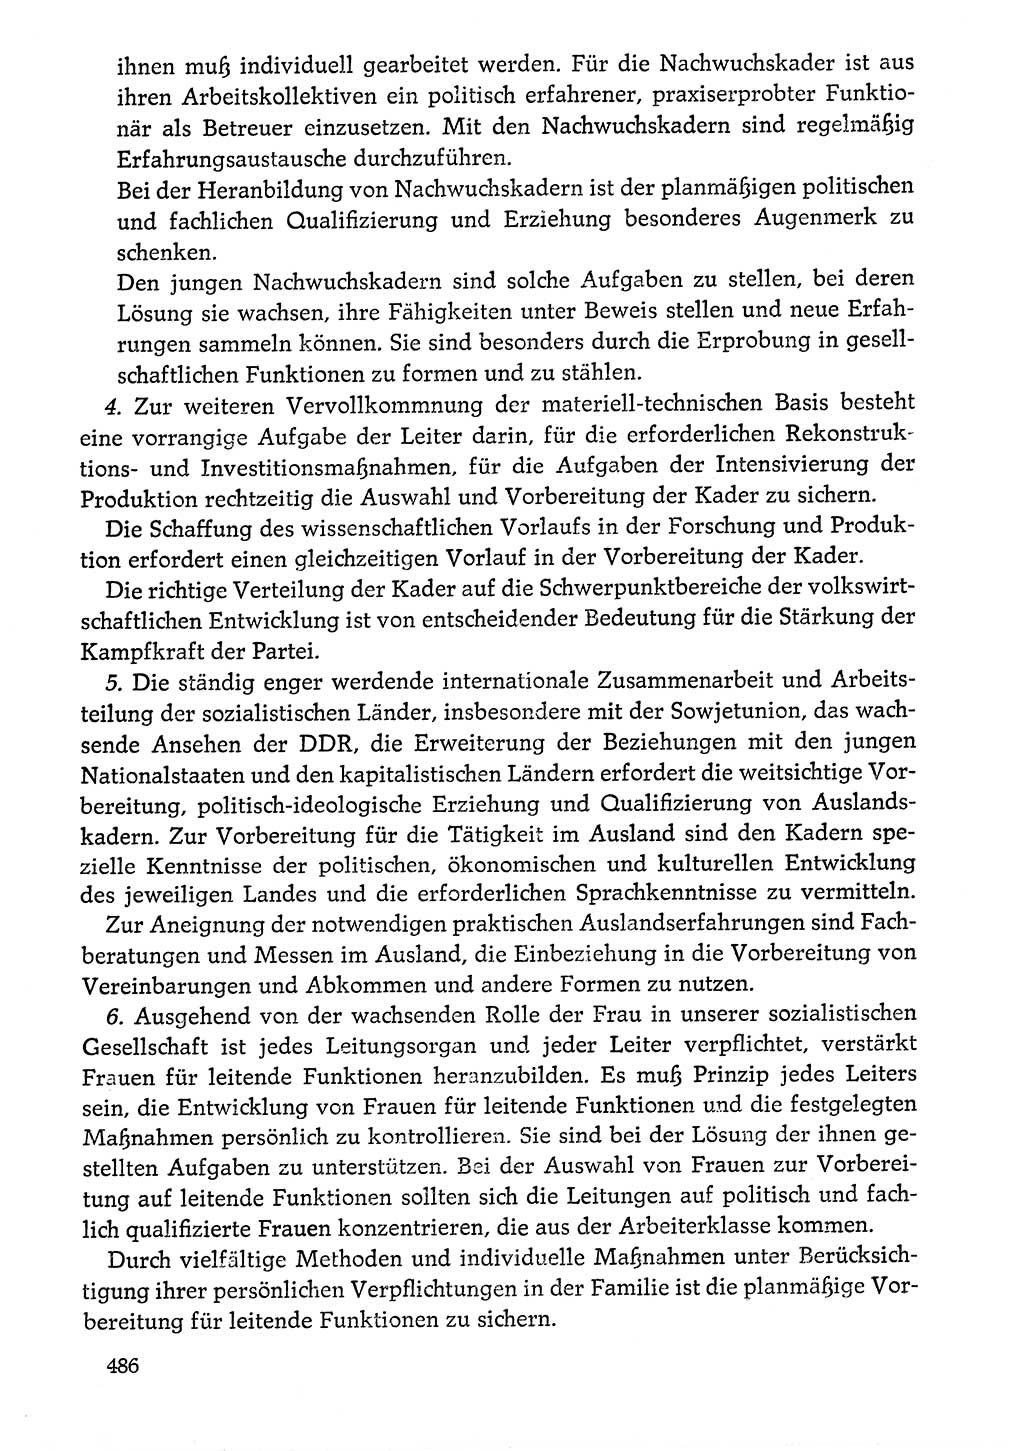 Dokumente der Sozialistischen Einheitspartei Deutschlands (SED) [Deutsche Demokratische Republik (DDR)] 1976-1977, Seite 486 (Dok. SED DDR 1976-1977, S. 486)